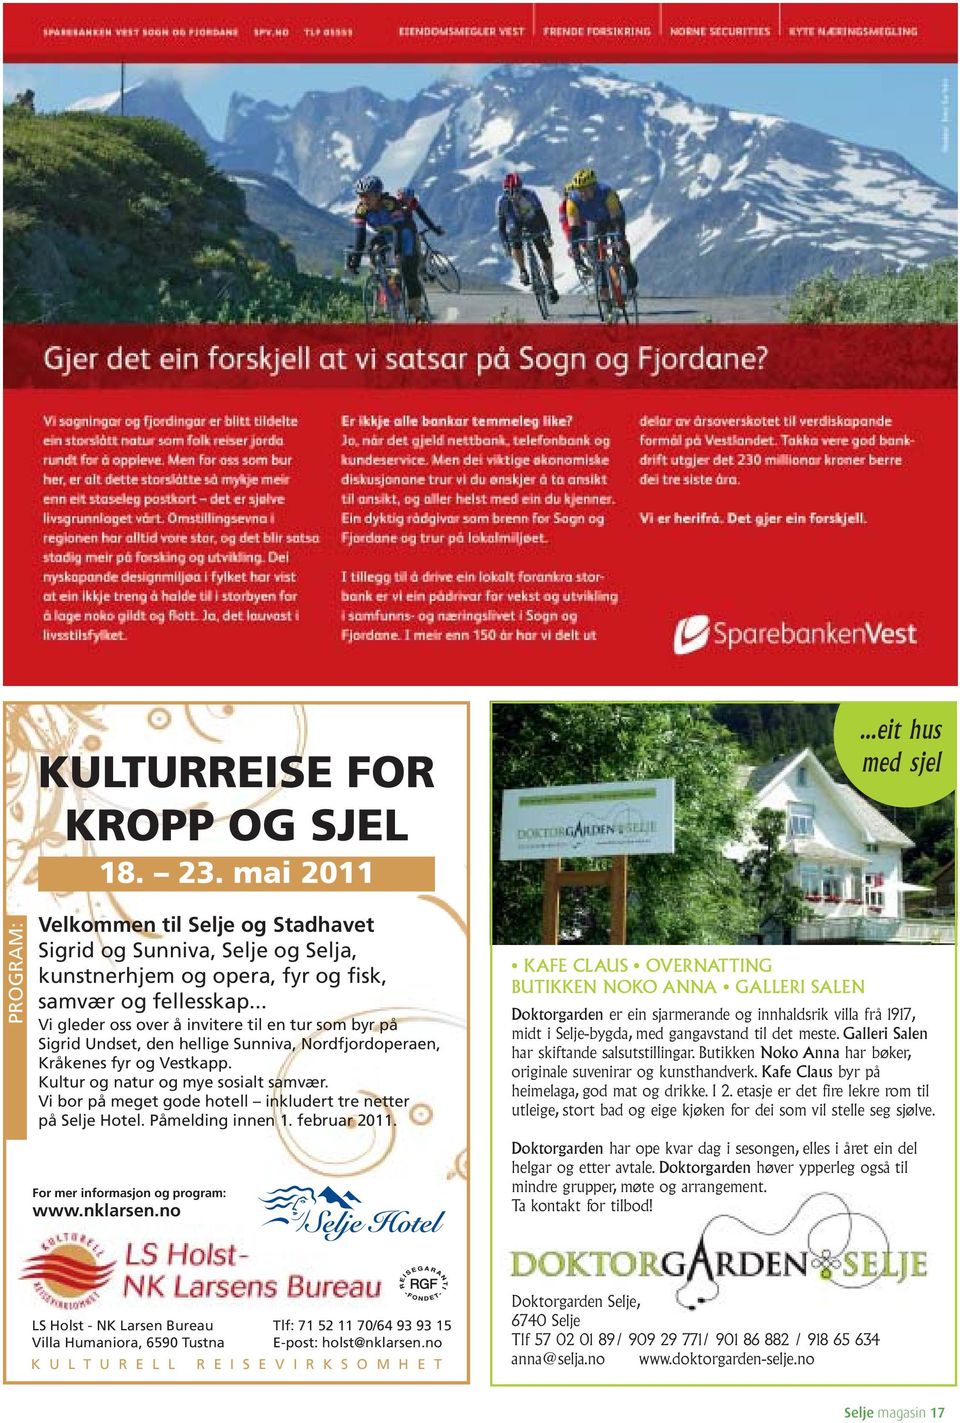 Vi bor på meget gode hotell inkludert tre netter på Selje Hotel. Påmelding innen 1. februar 2011. For mer informasjon og program: www.nklarsen.